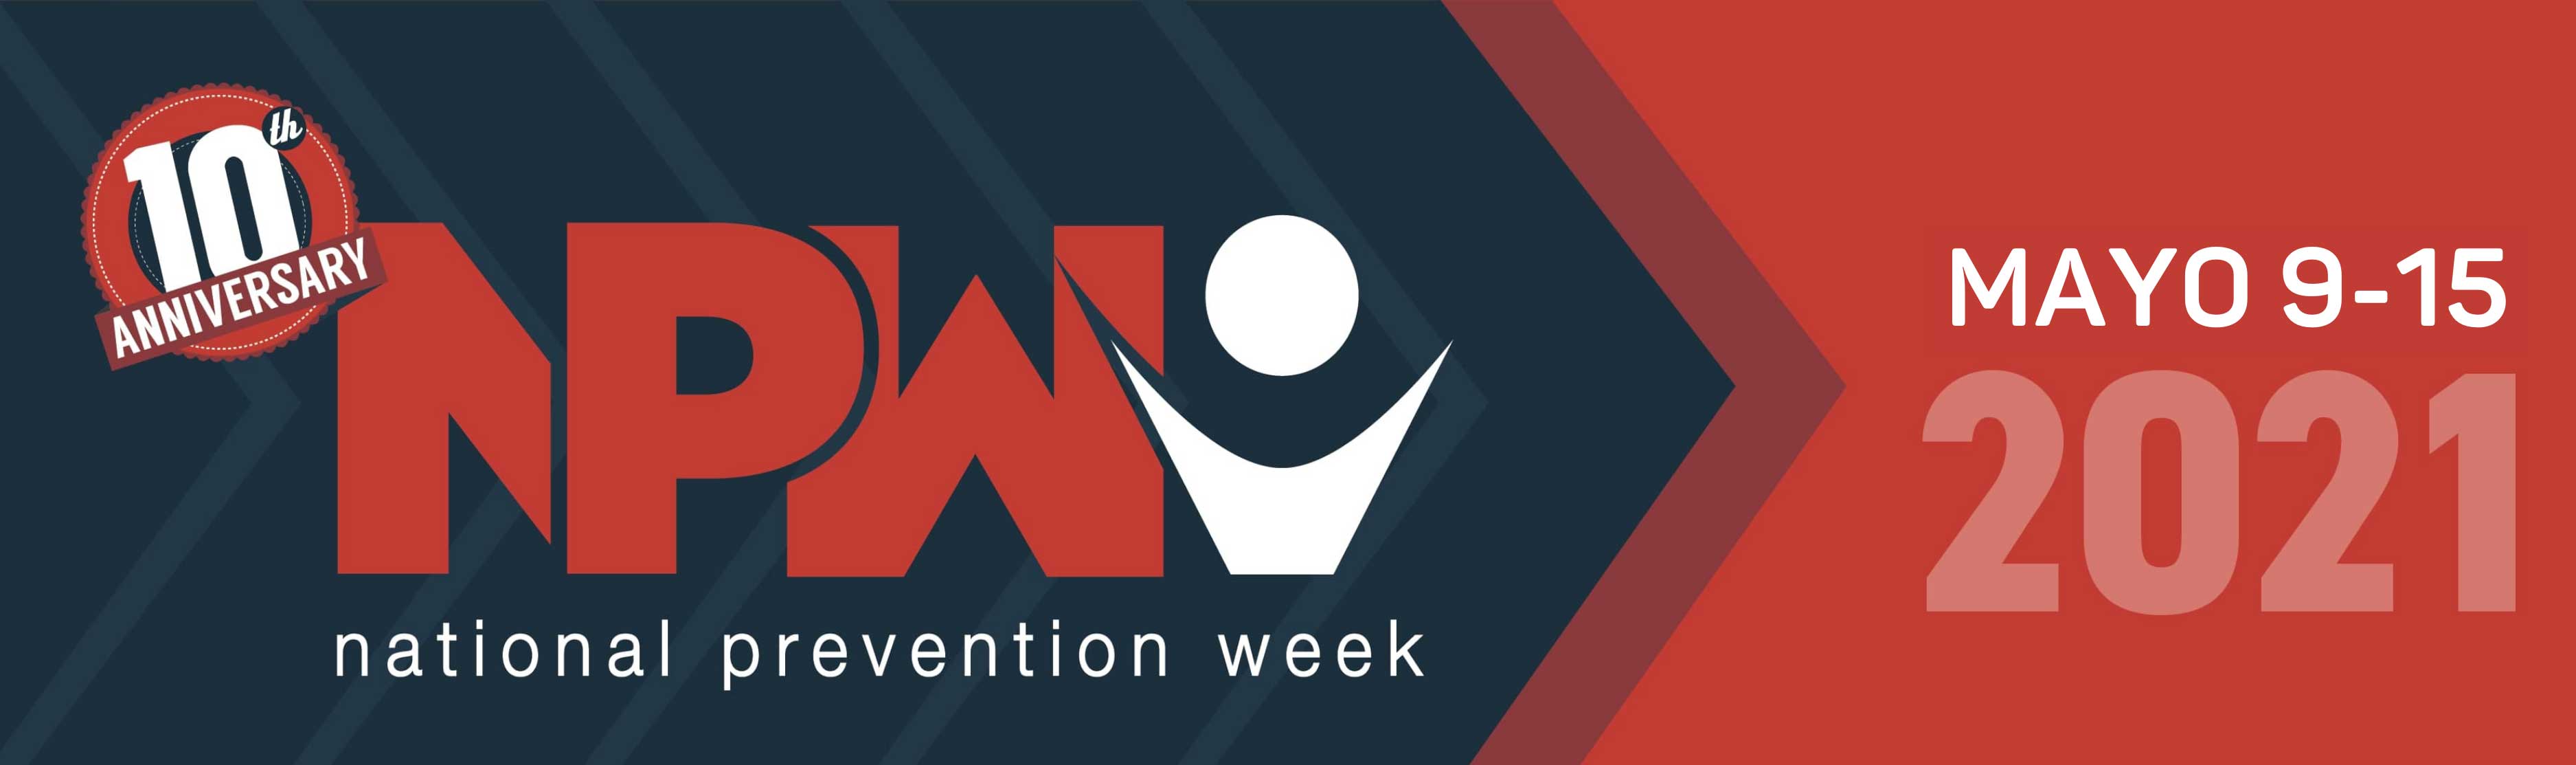 Semana nacional de prevención - Mayo 10 al 16 de 2020